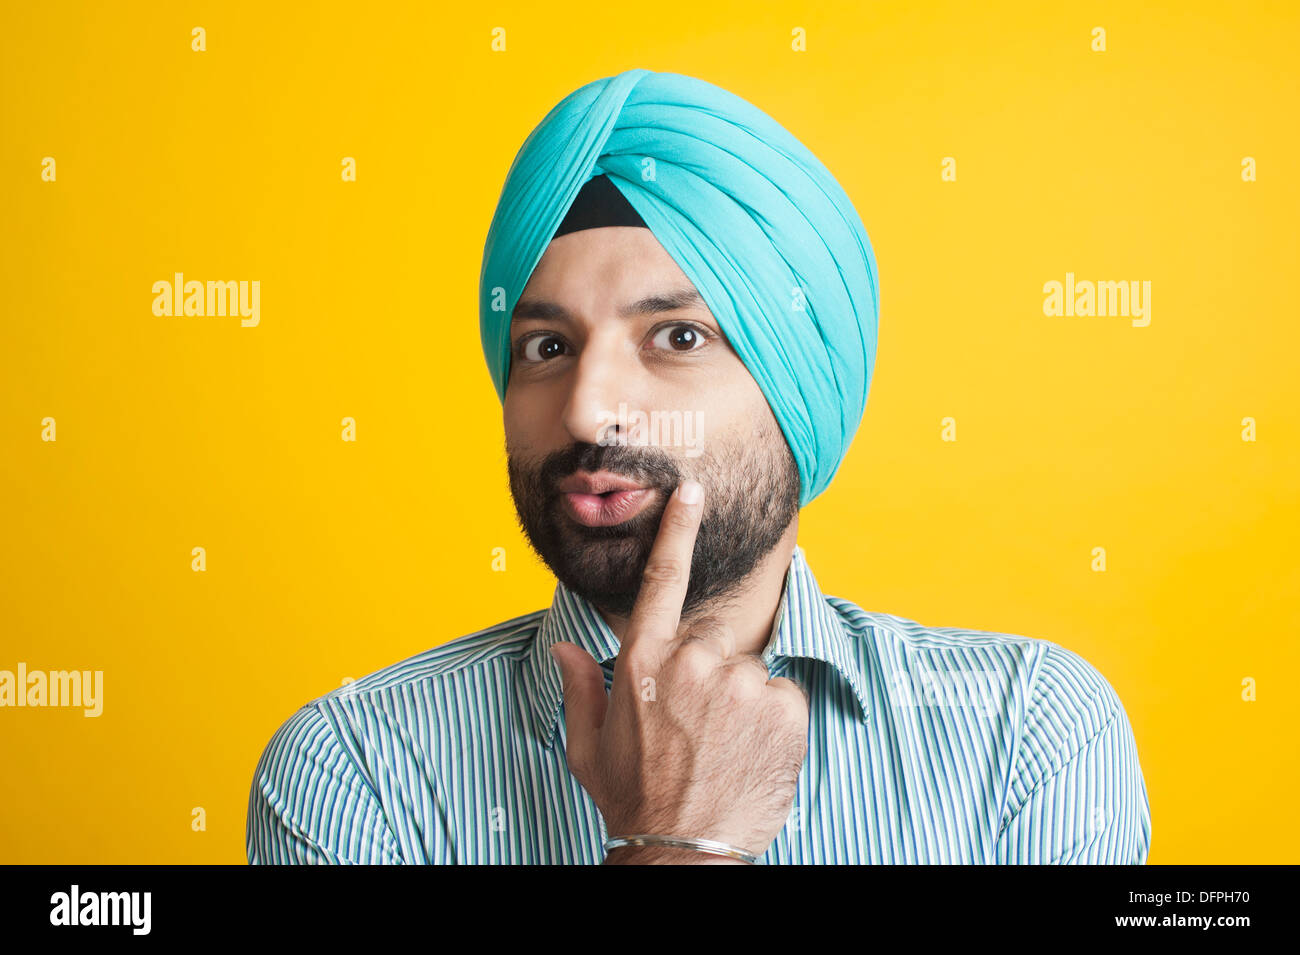 Ritratto di un uomo Sikh gesti Foto Stock